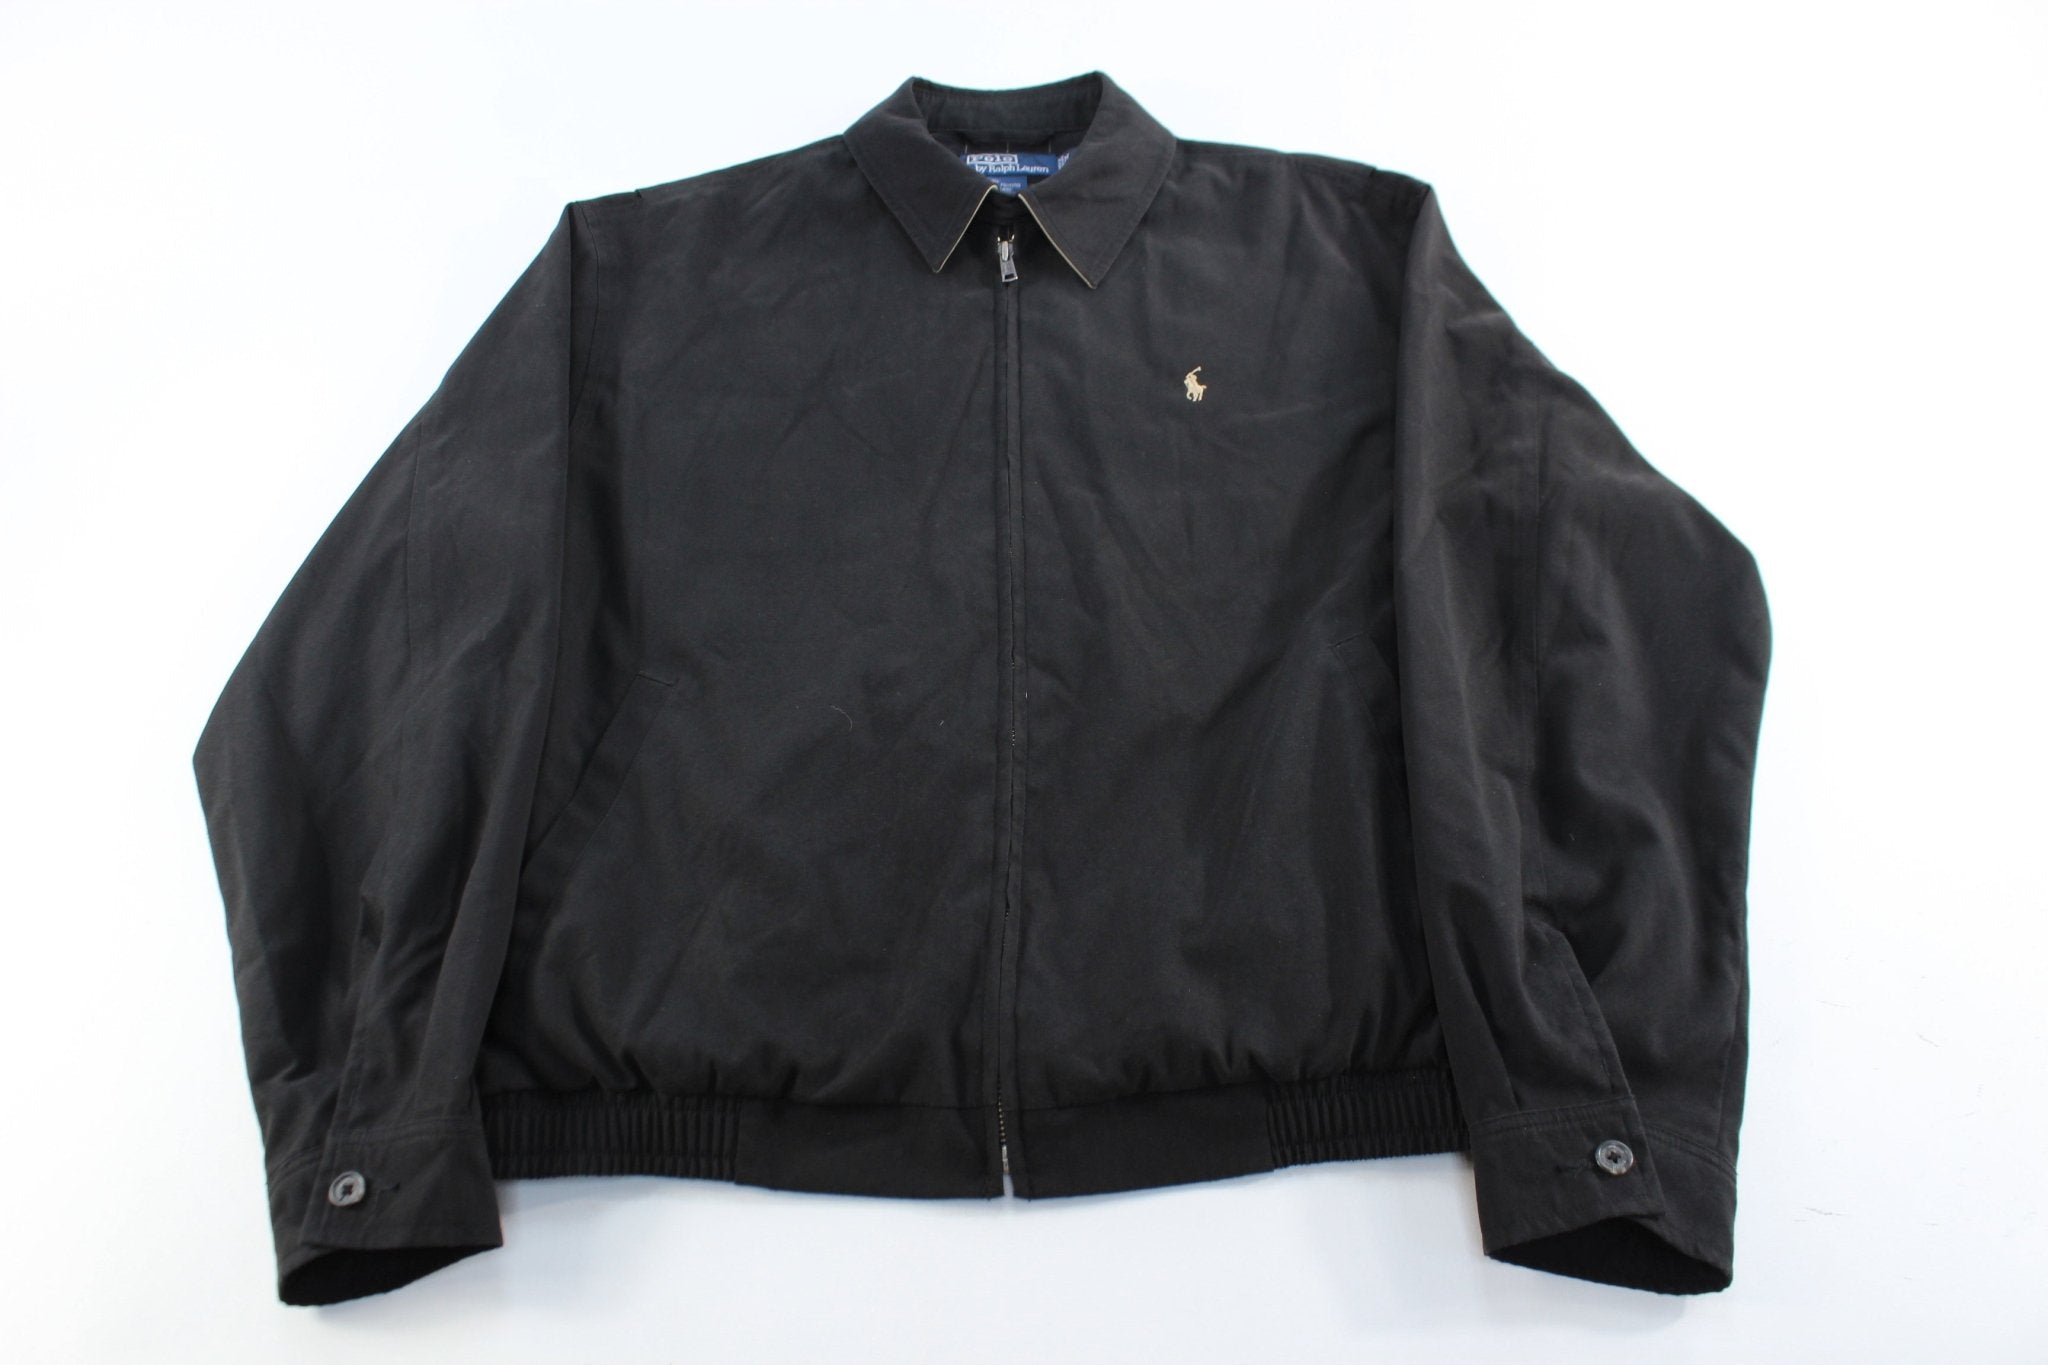 Polo Ralph Lauren Quilted Biker Jacket With In Black, $184, Asos